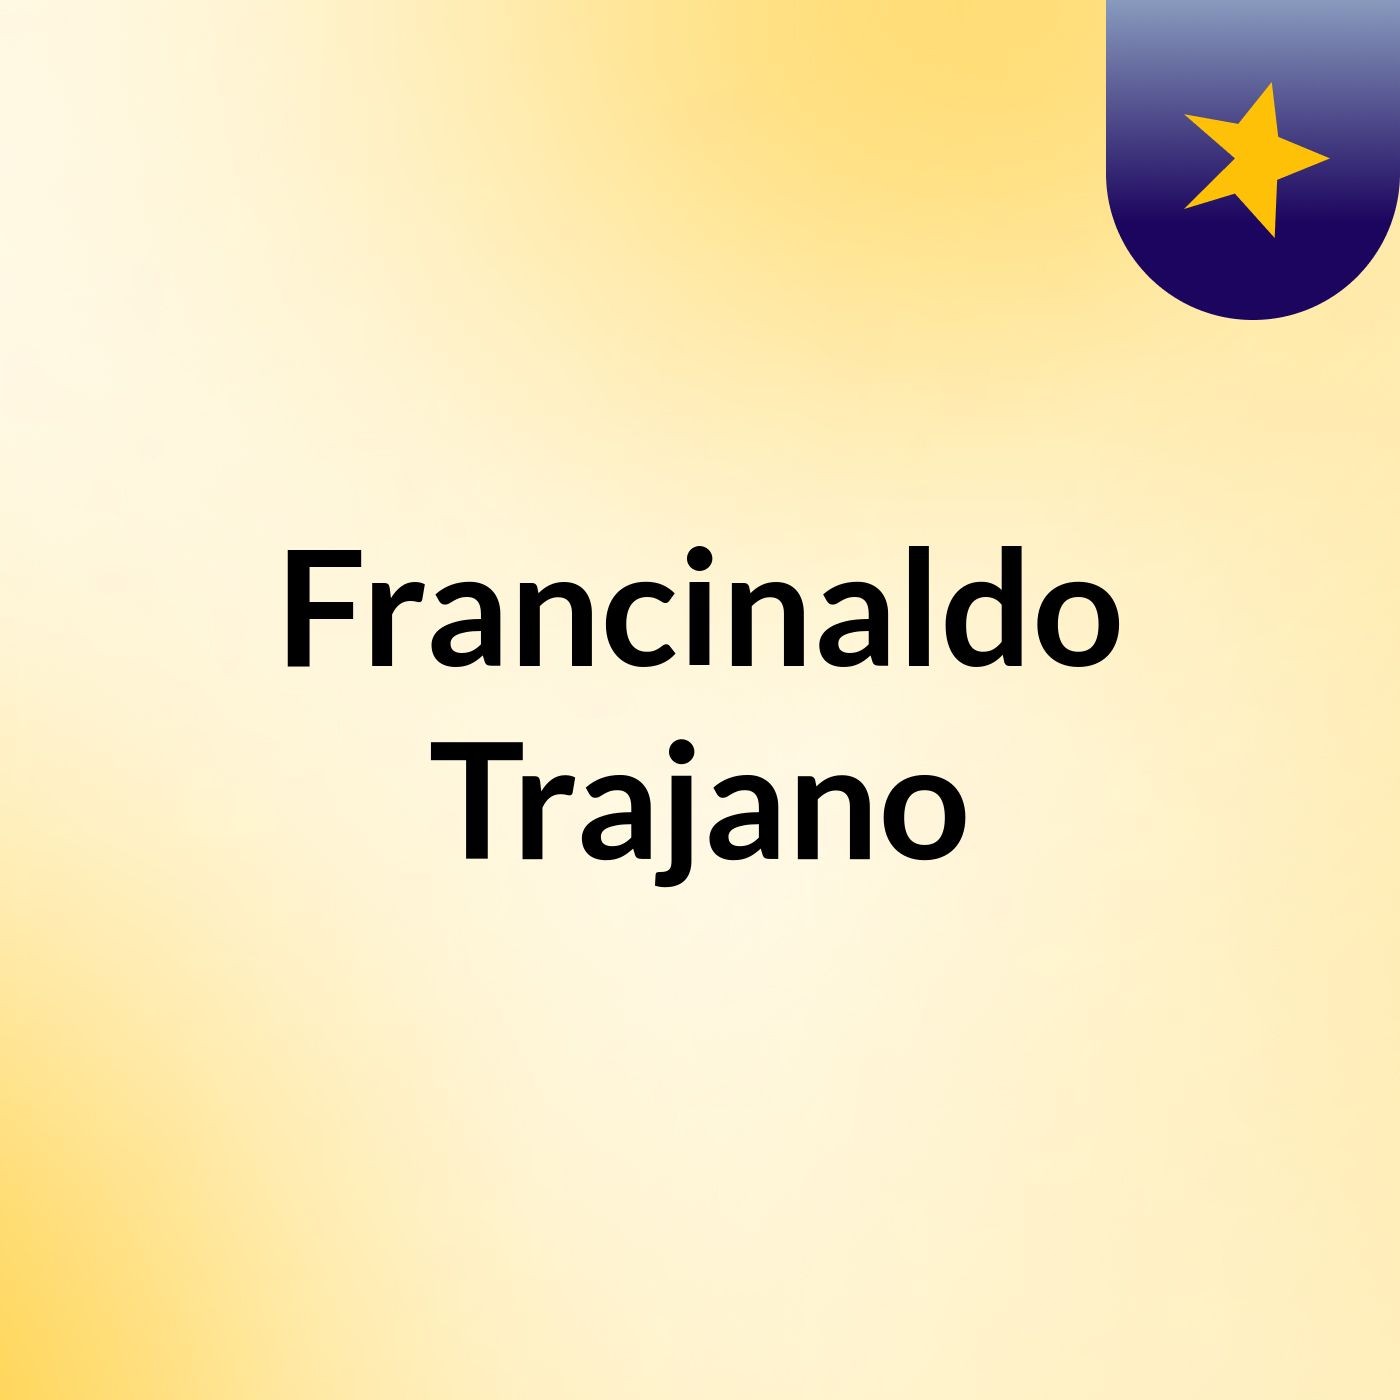 Francinaldo Trajano